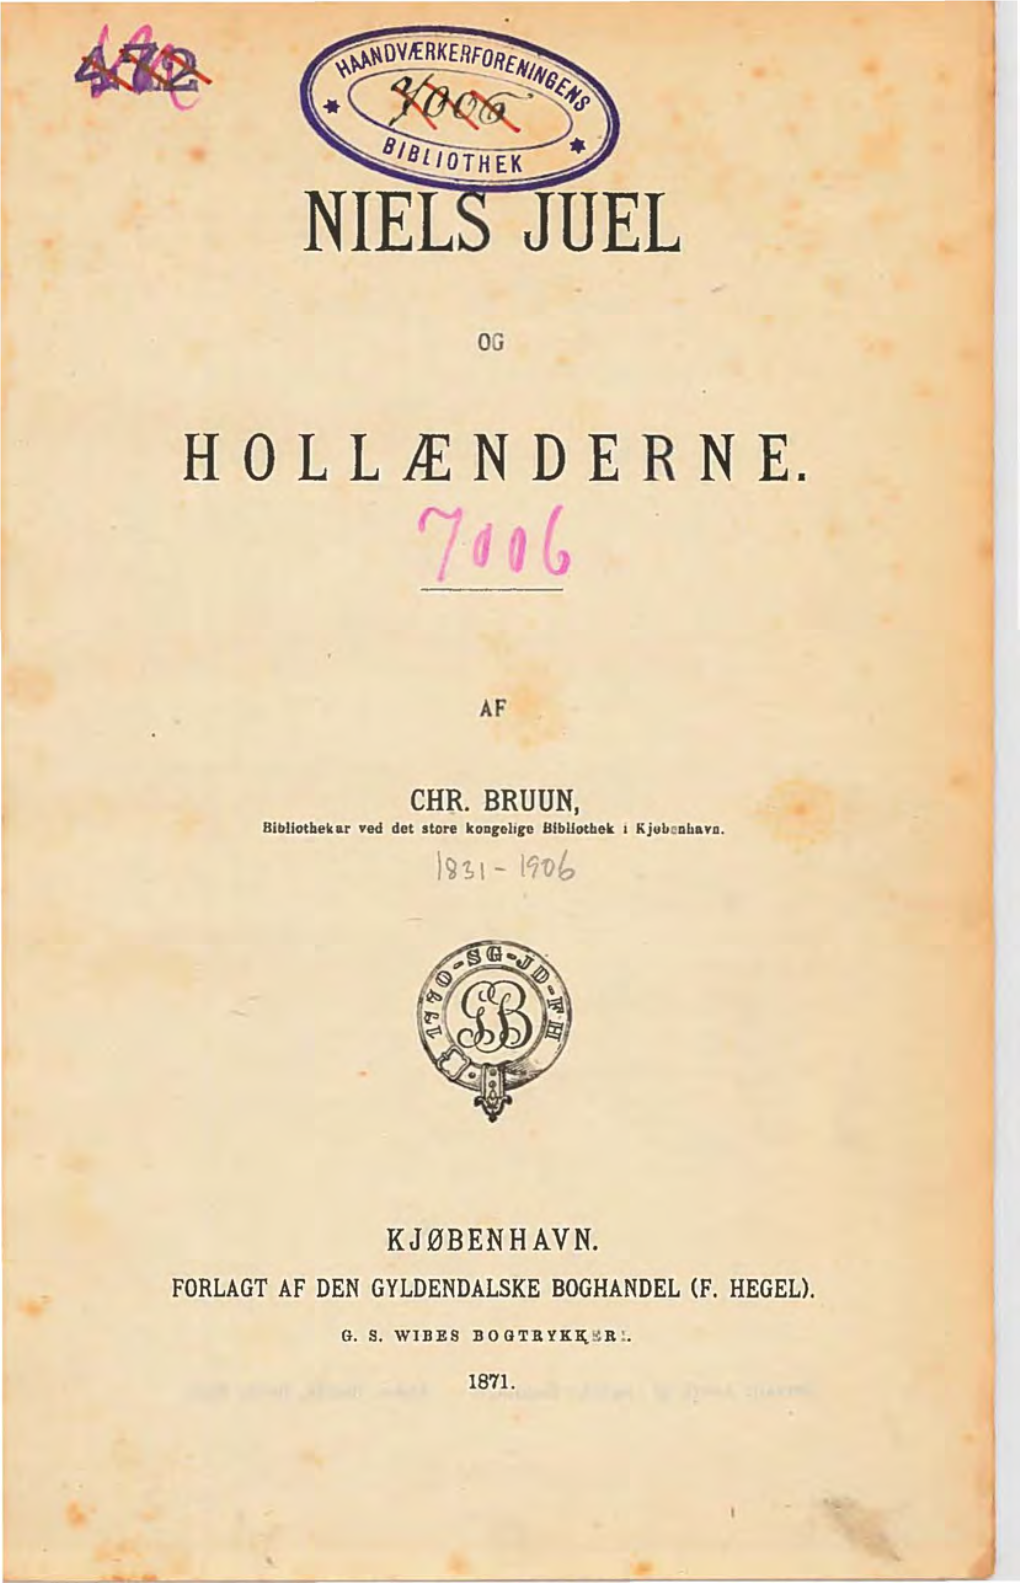 Bruun, Chr., “Niels Juel Og Hollænderne.”